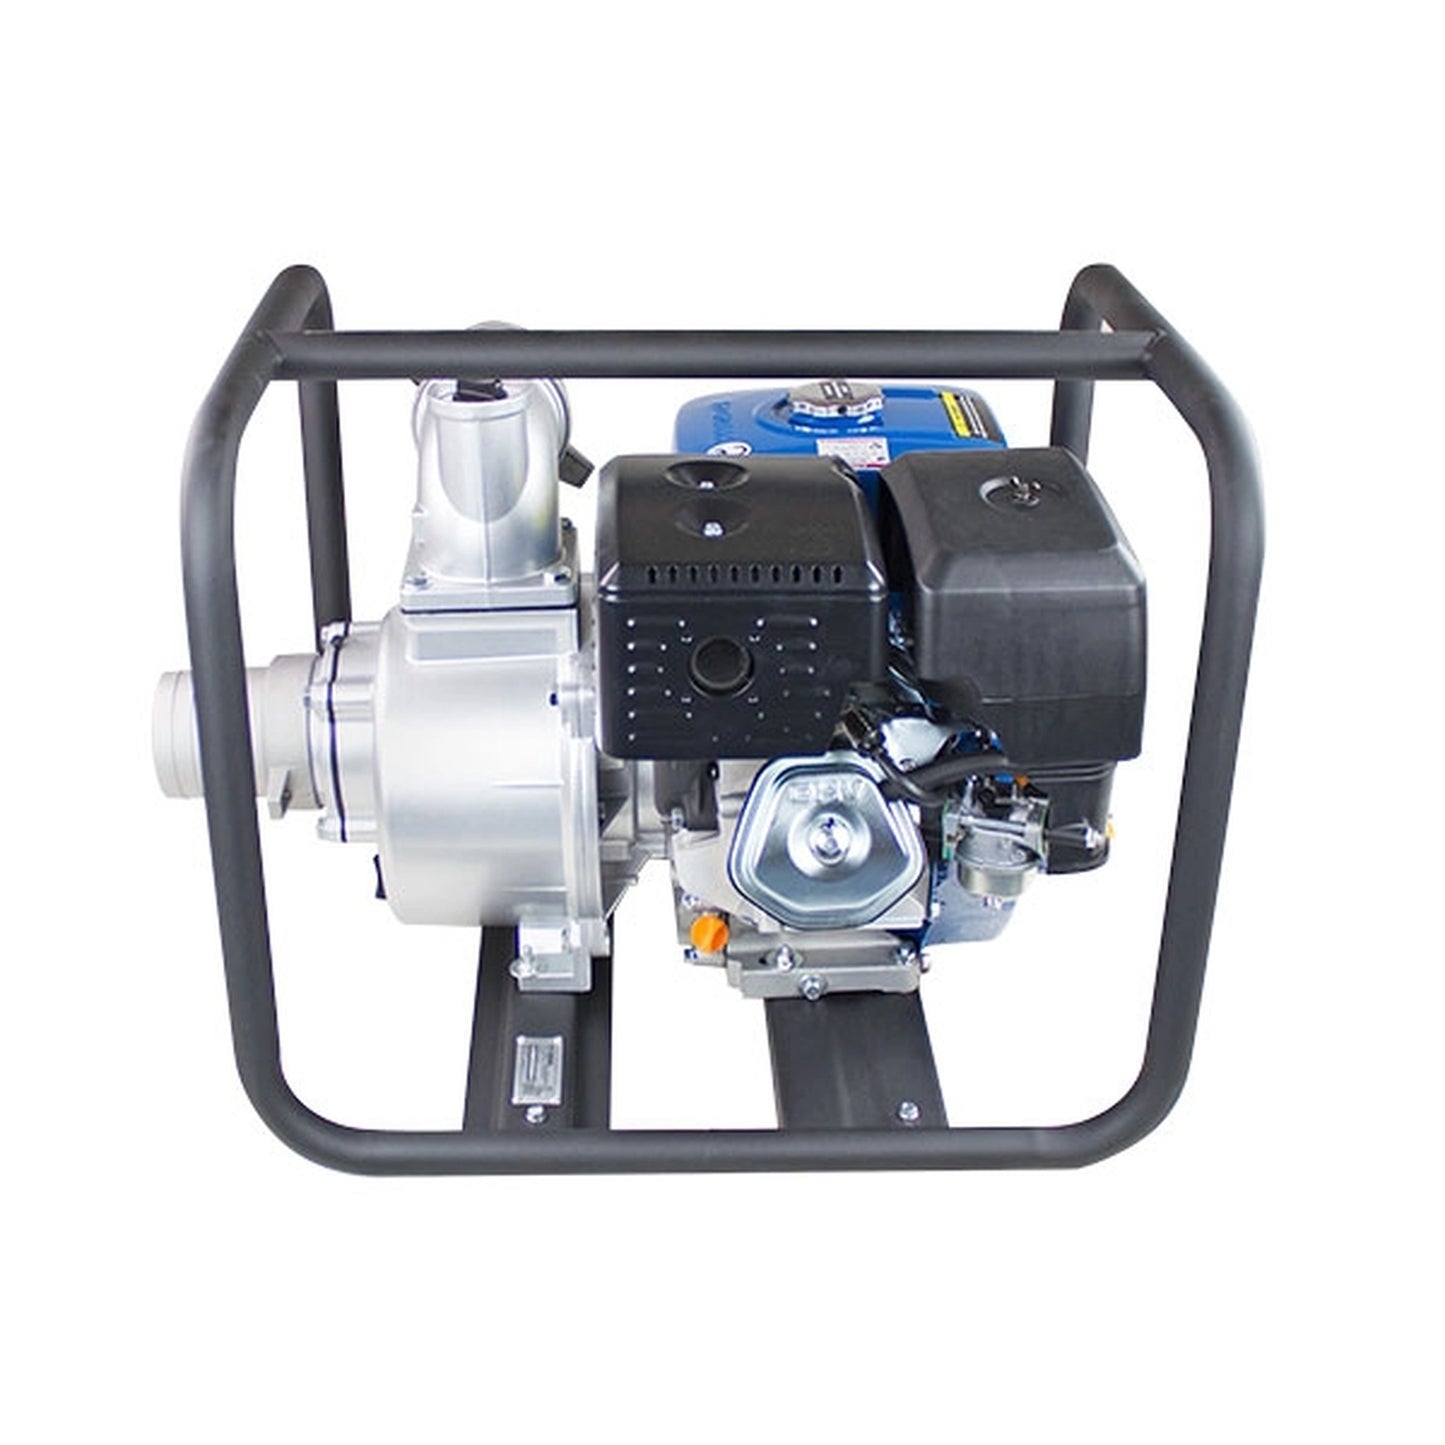 Hyundai HY100 Professional Petrol Water Pump 389cc 13hp